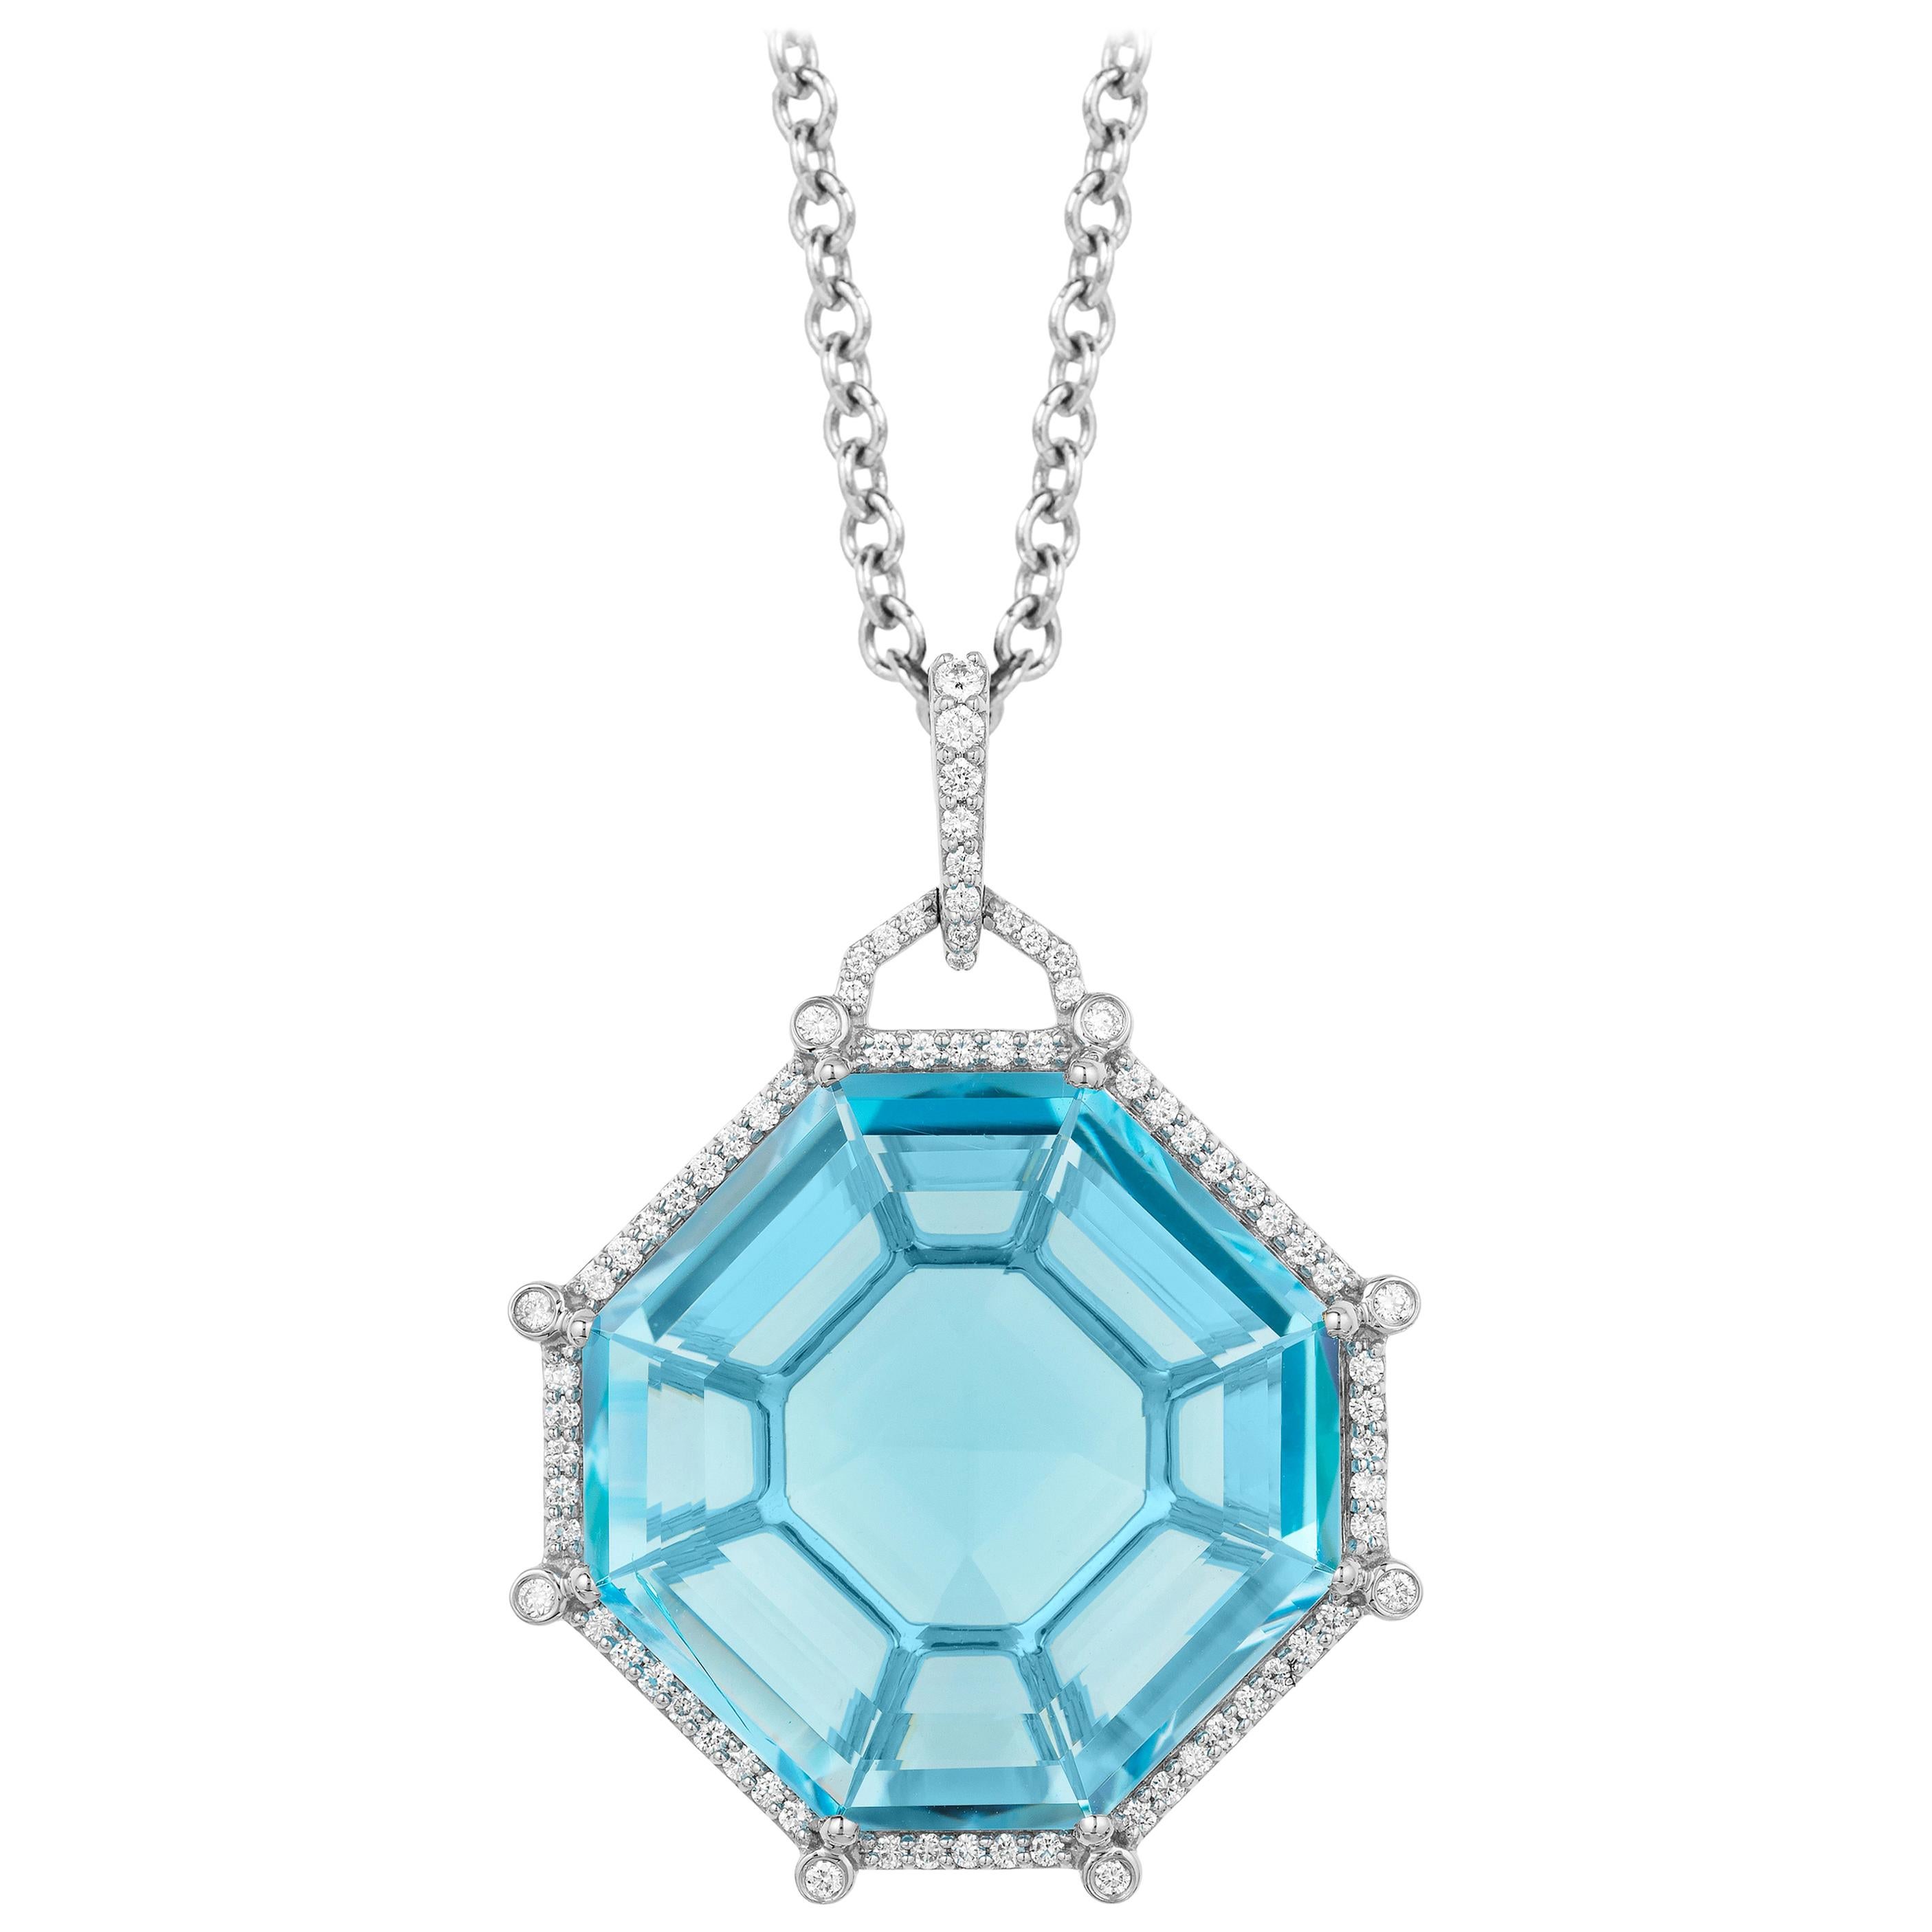 Pendentif Goshwara octogonal en topaze bleue et diamants